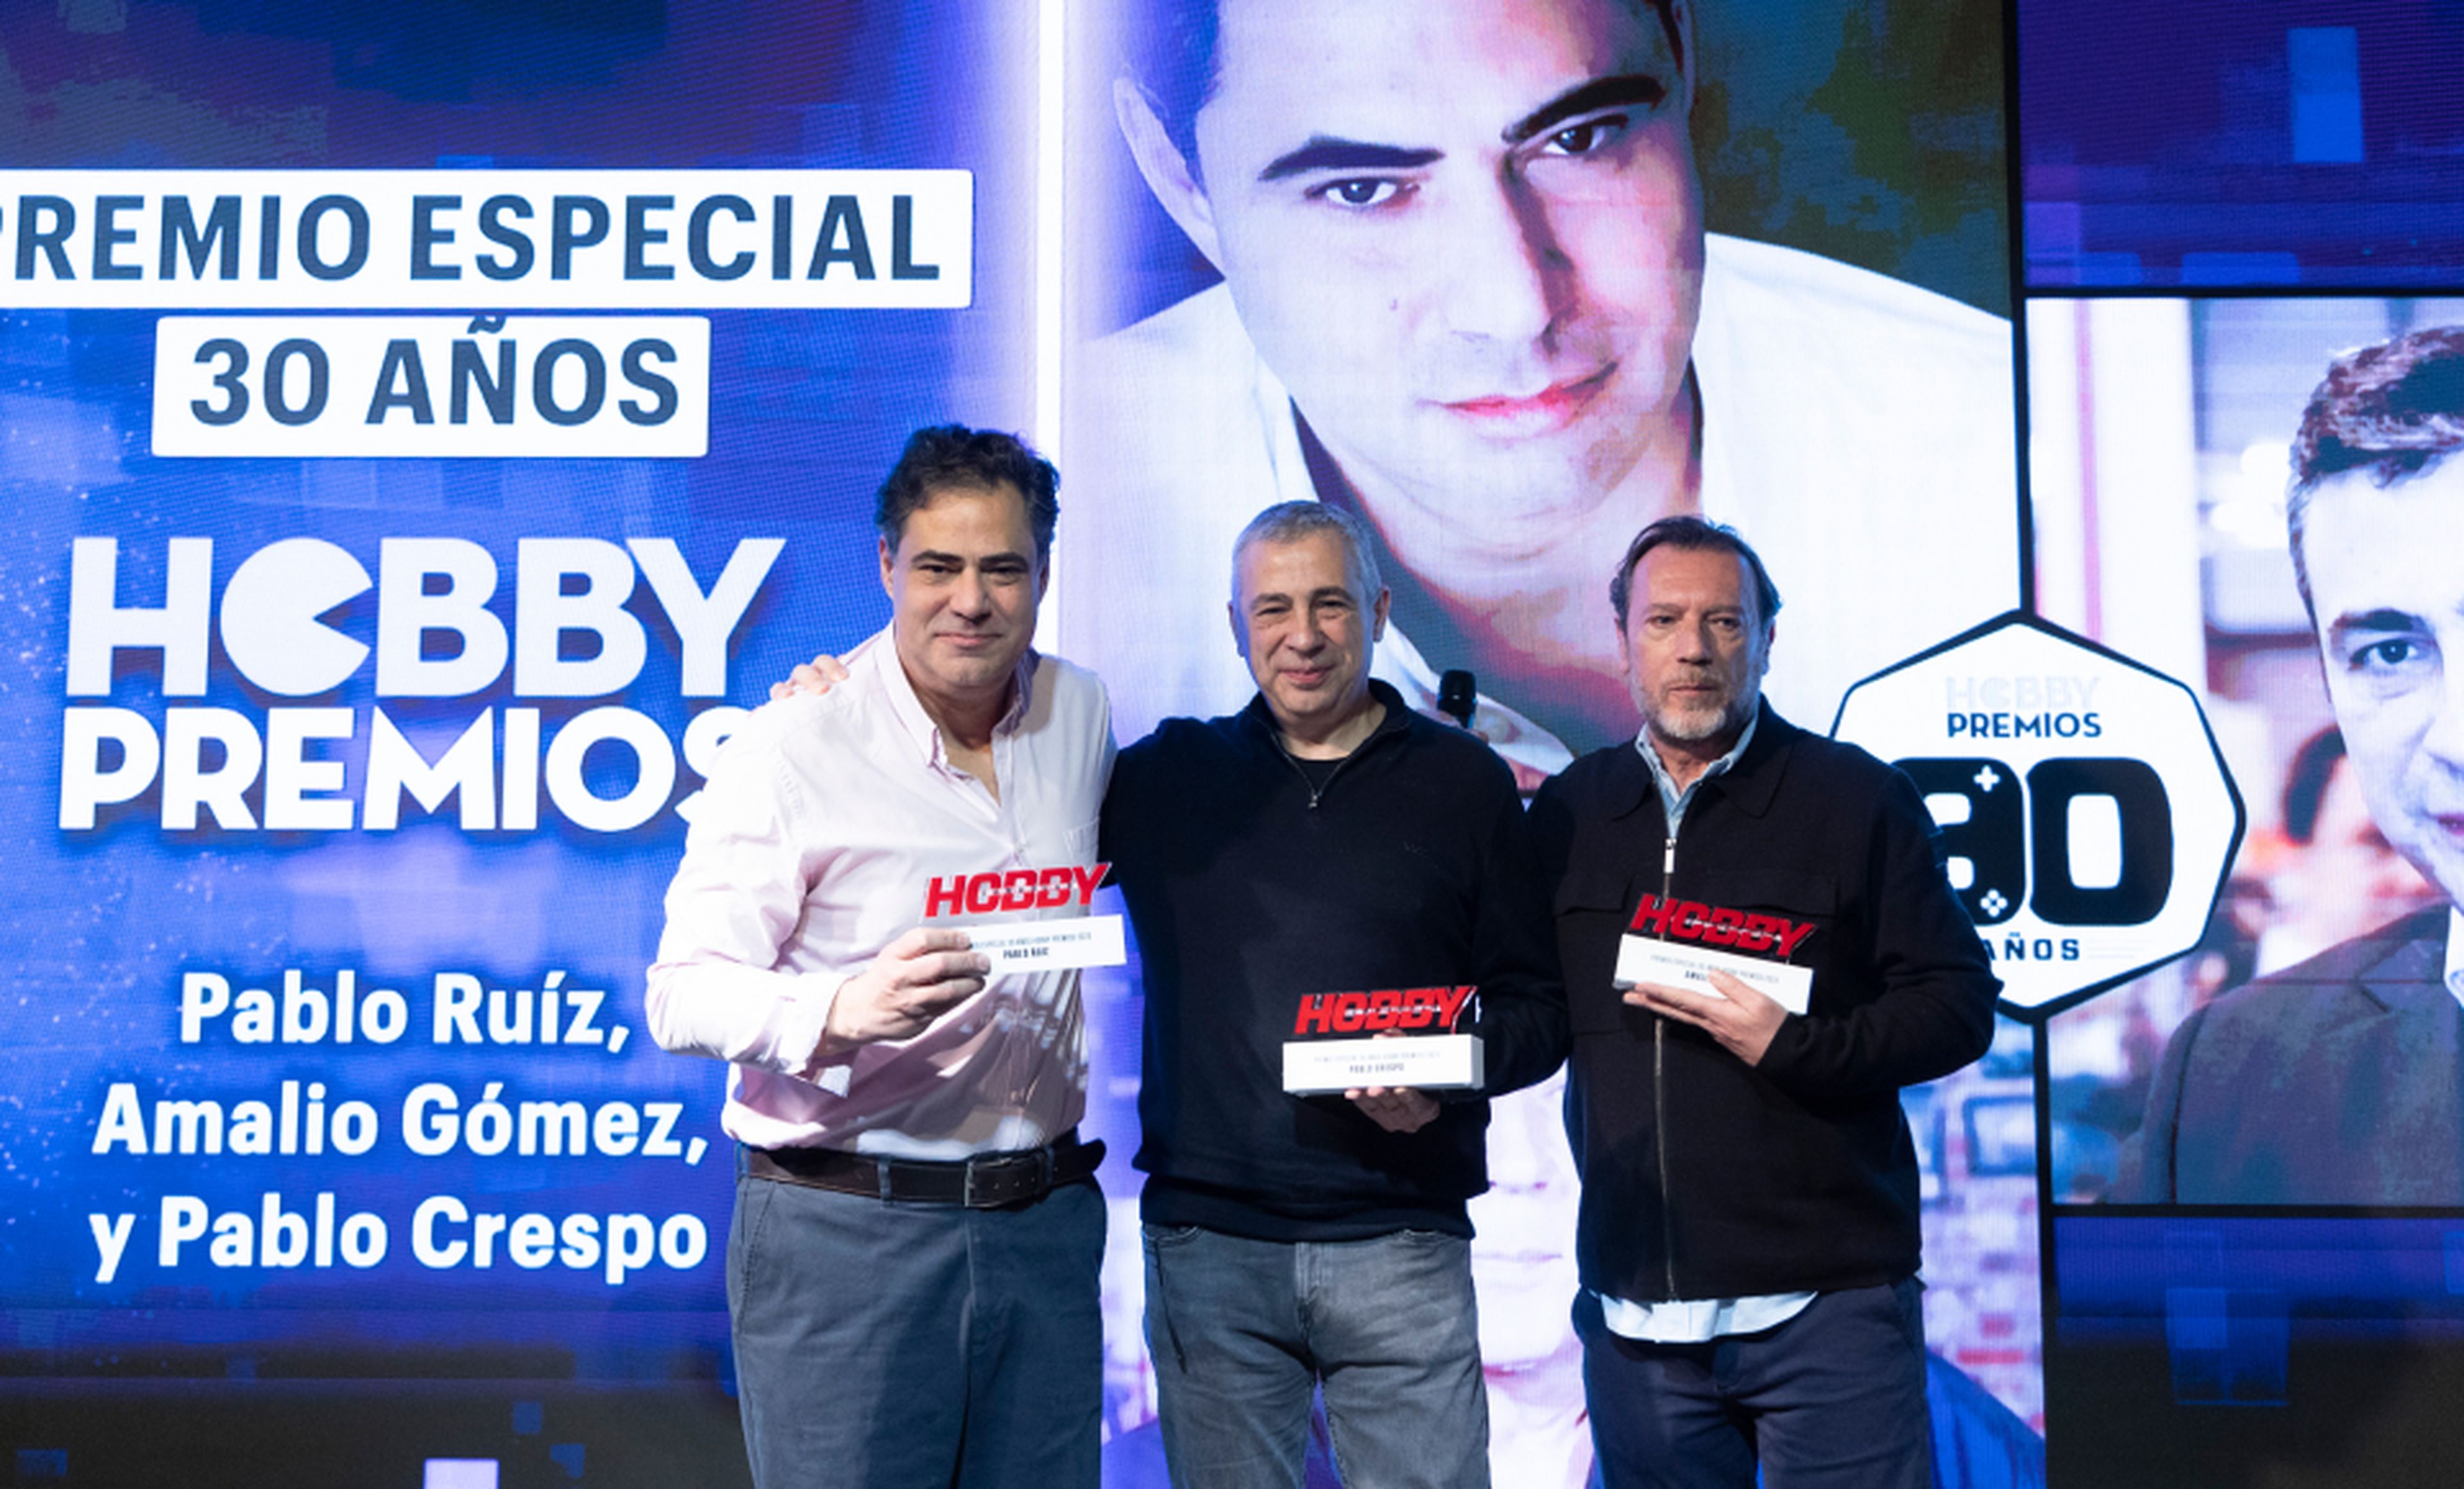 De izquierda a derecha: Pablo Ruiz, Pablo Crespo y Amalio Gómez, recibieron el premio especial 30 edición Hobby Premios. 